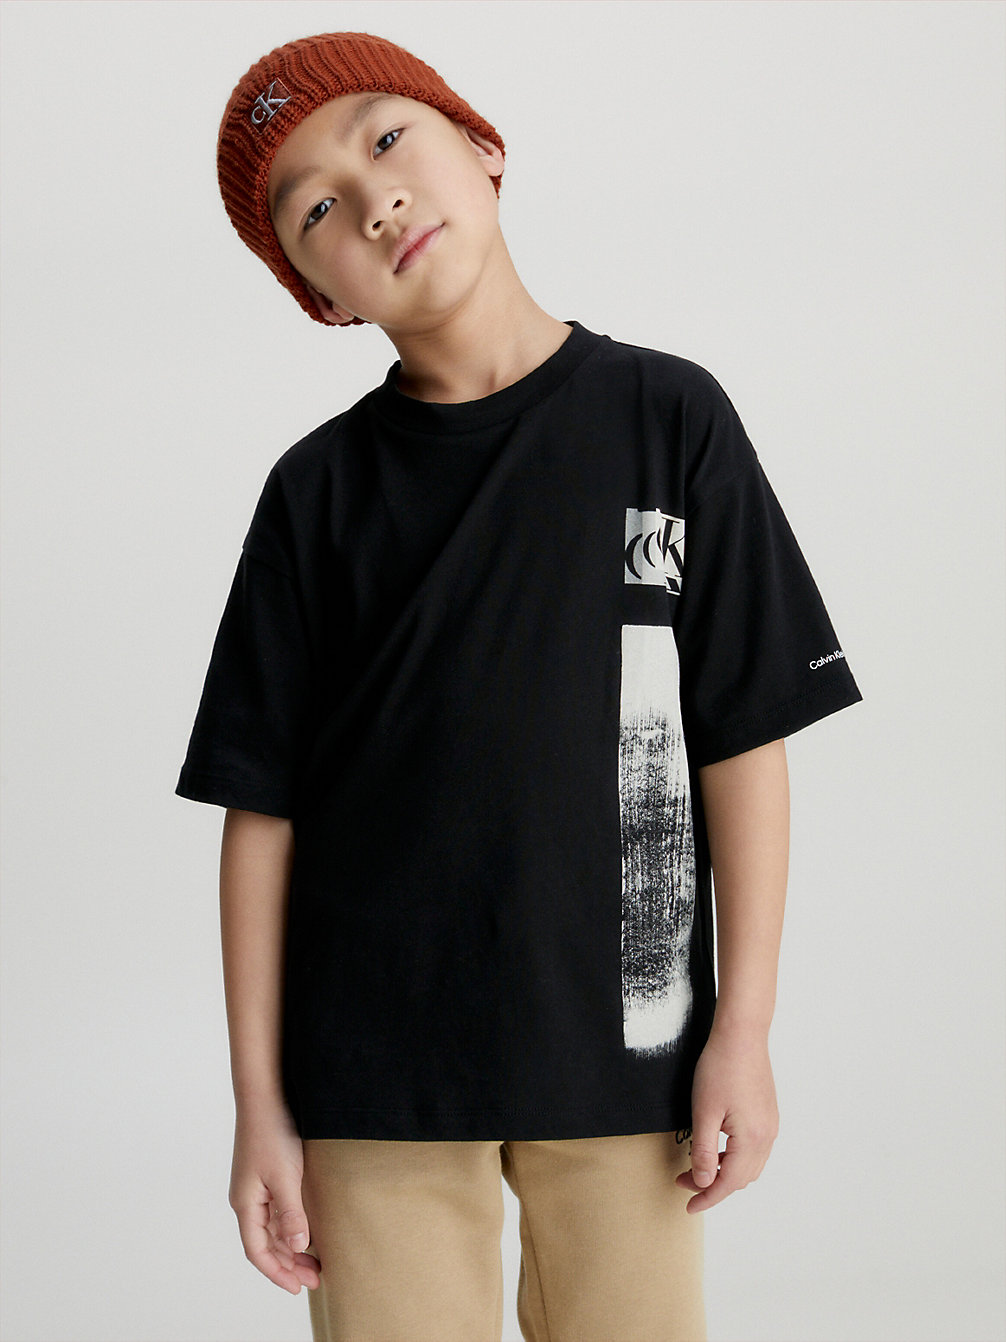 T-Shirt Con Grafica Glitch Taglio Relaxed > CK BLACK > undefined bambino > Calvin Klein